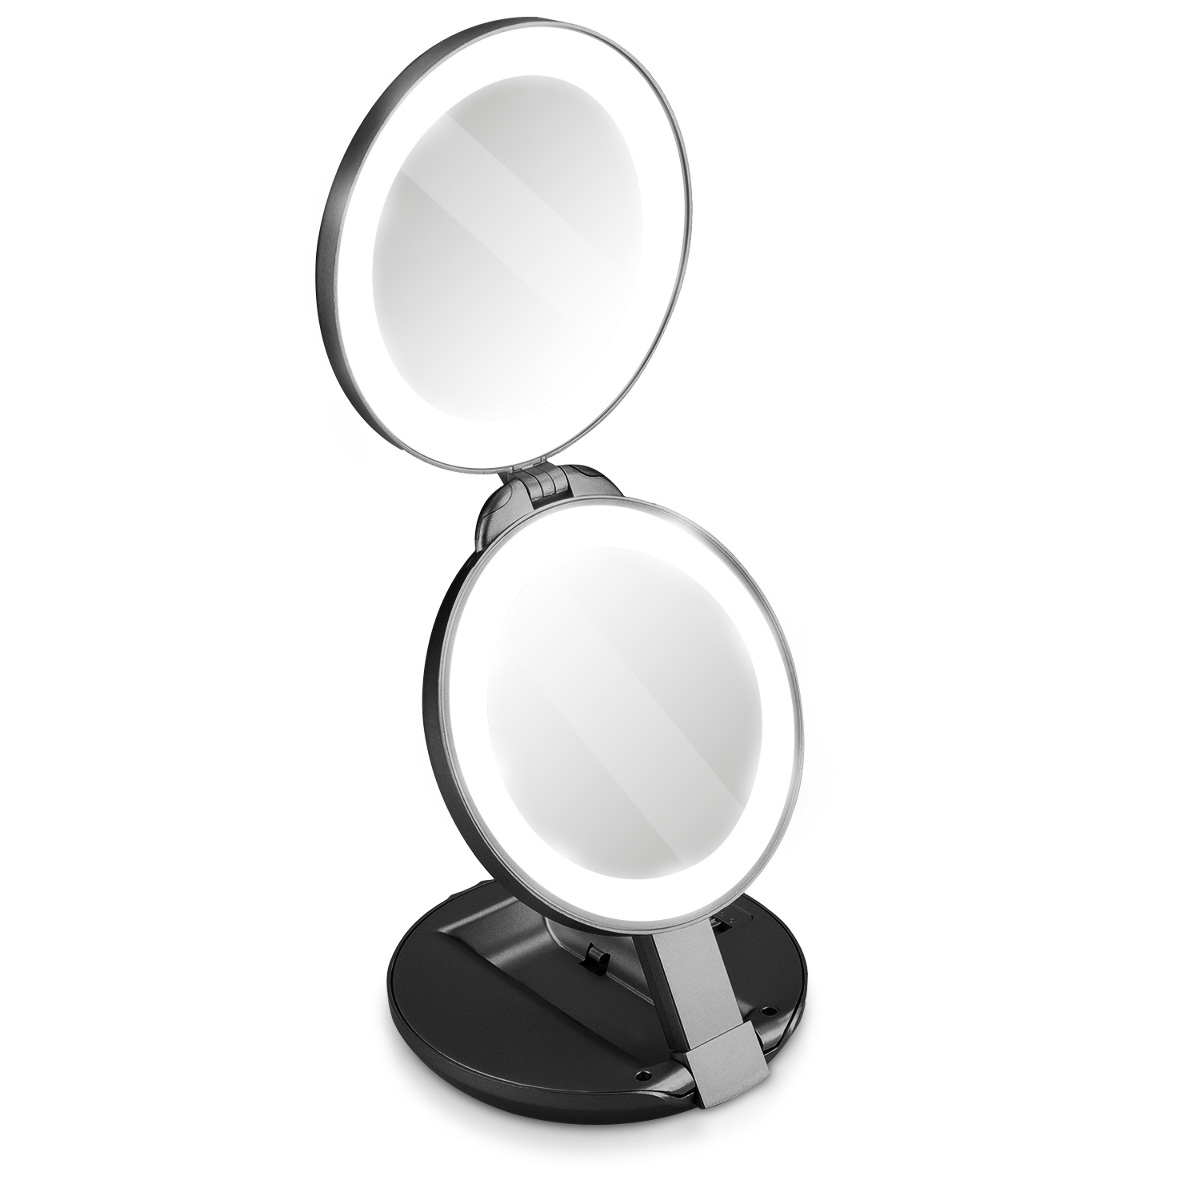 1 x Aufklappbare LED Taschenspiegel 1x 10-fach Vergrößerung LED Kosmetikspiegel 